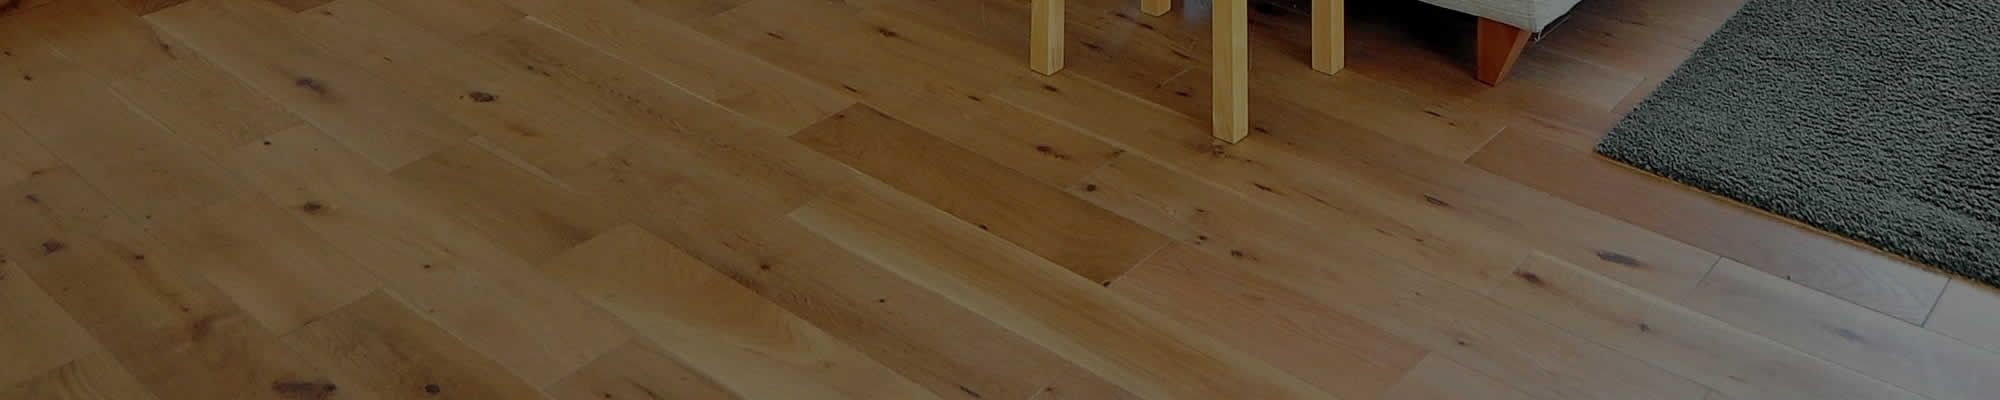 Hardwood Floor Resurfacing Whitefish Bay WI